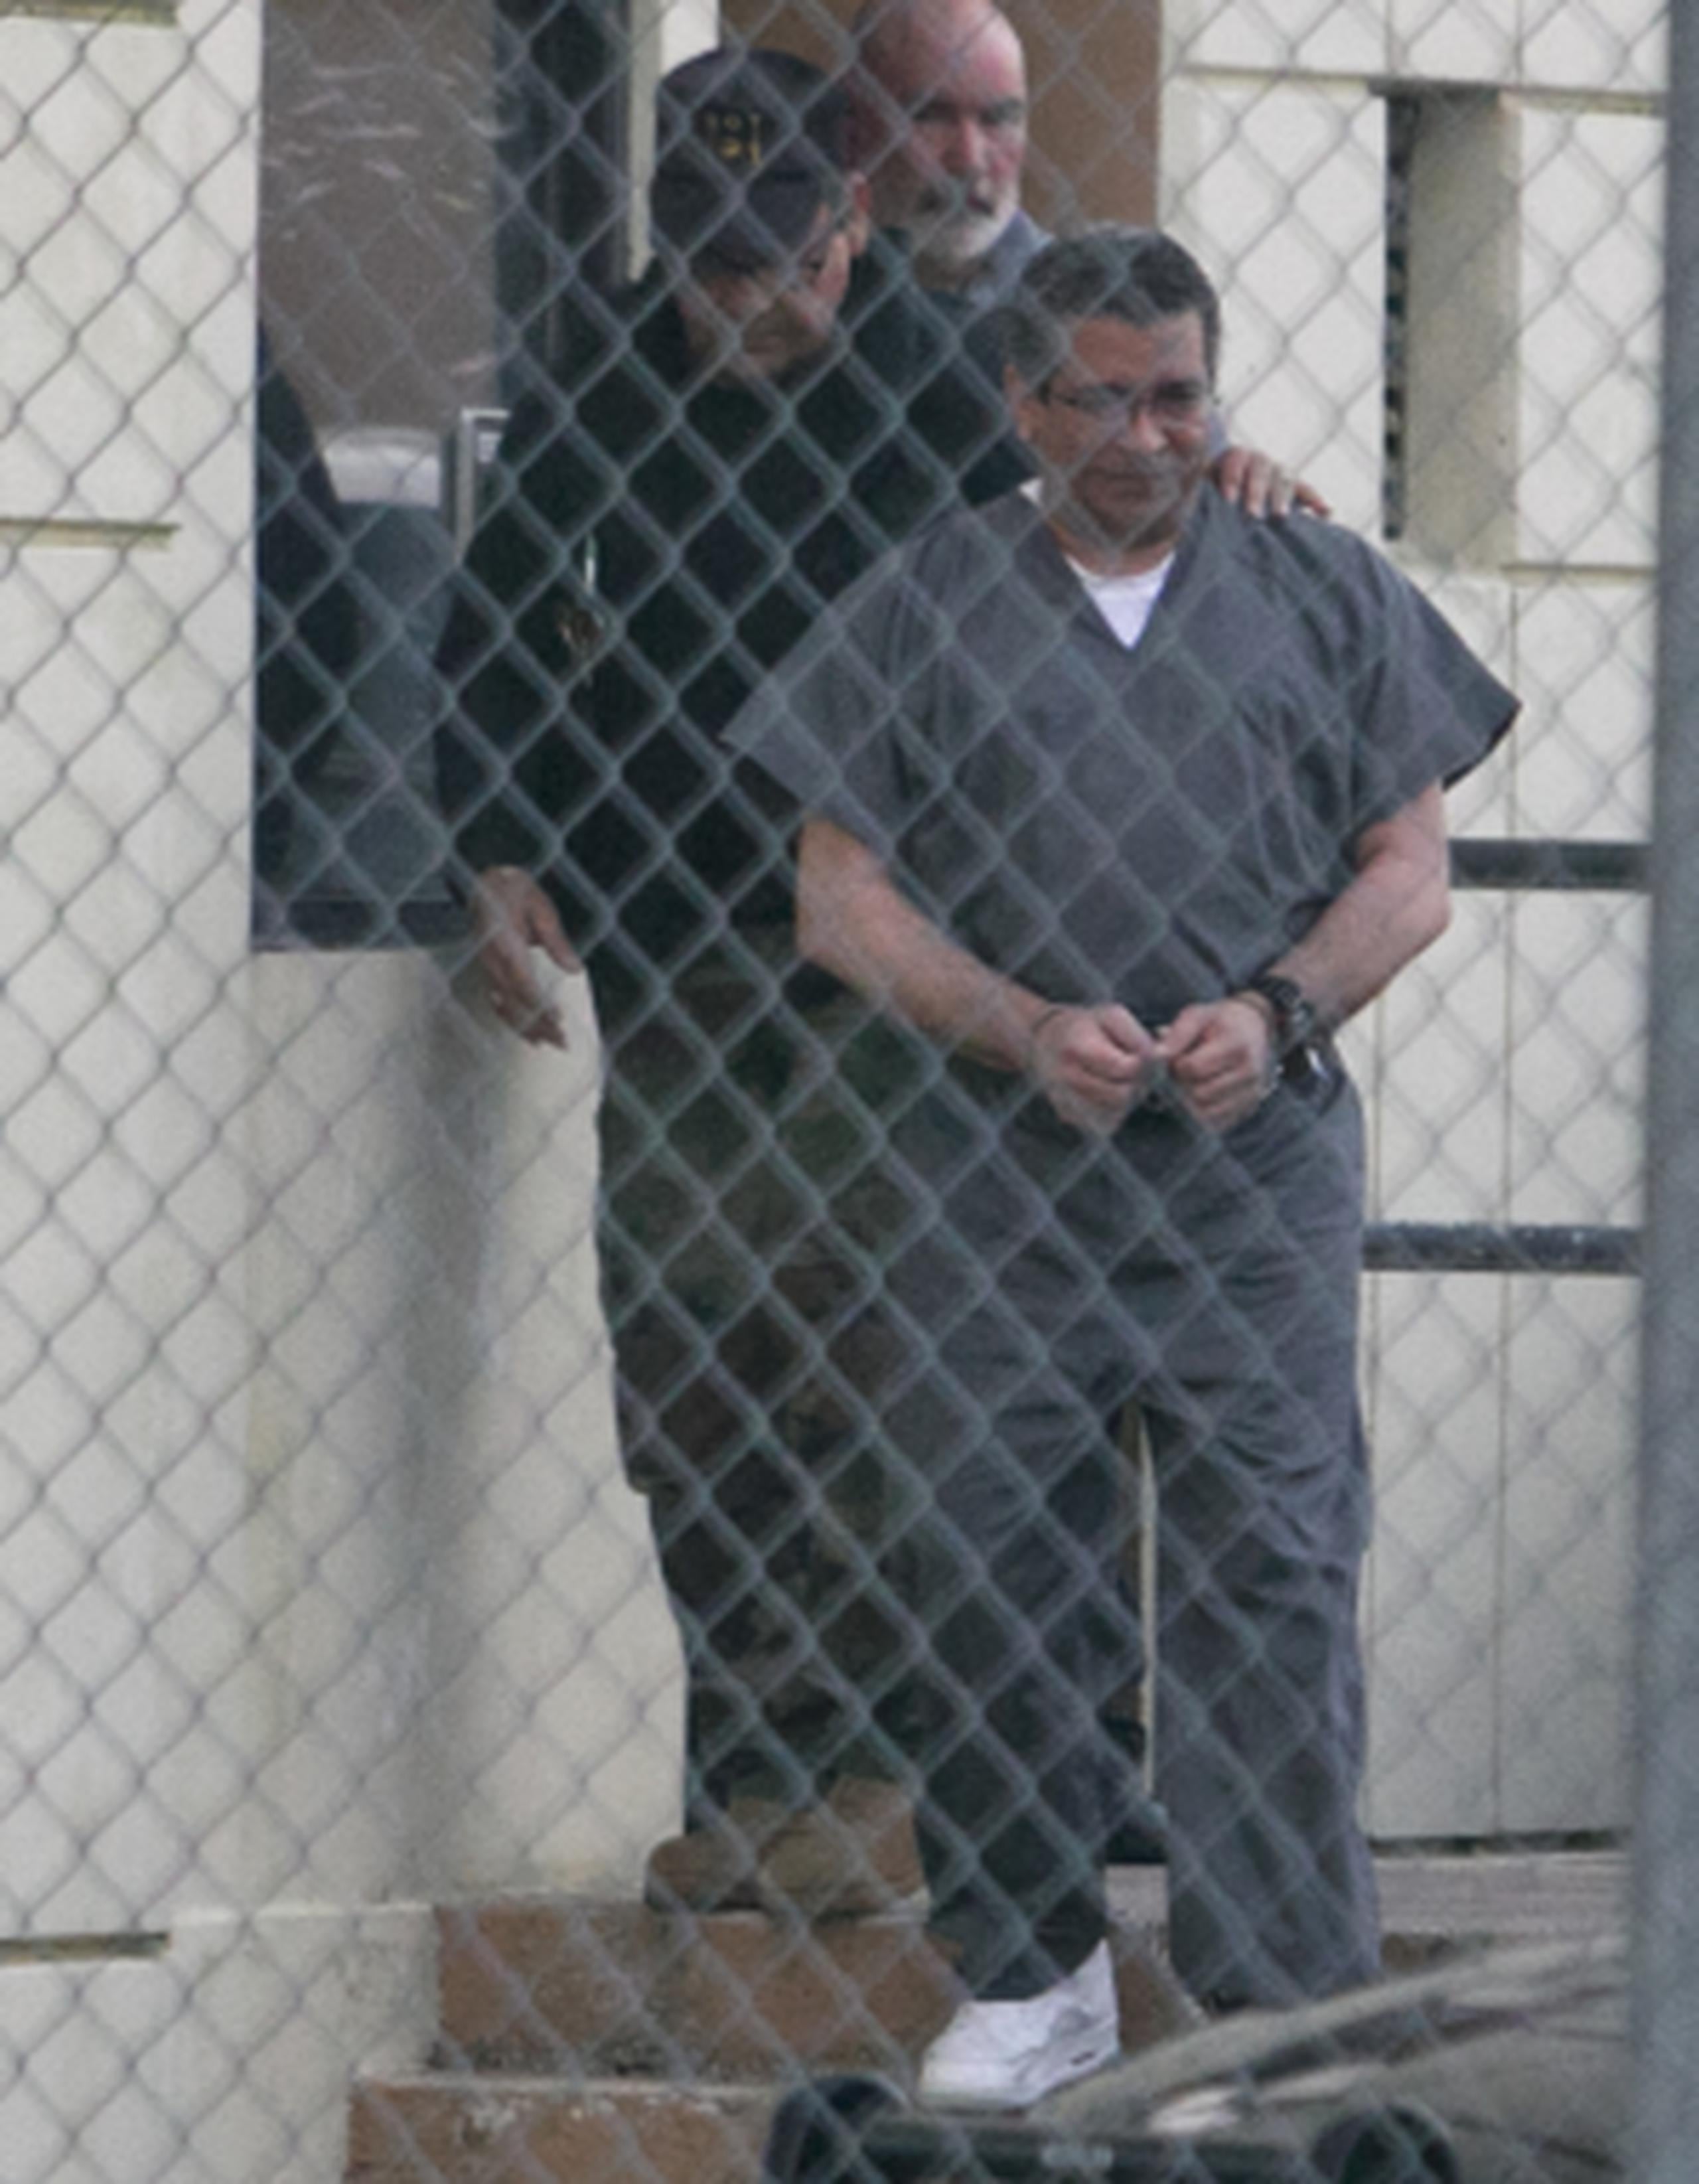 En noviembre de 2013, Cordero fue sentenciado a 10 años de cárcel y 15 años de libertad supervisada por posesión de pornografía infantil, mientras en el foro estatal,  recibió una pena de ocho años por otros cargos similares y el delito de actos lascivos. (GFR MEDIA)